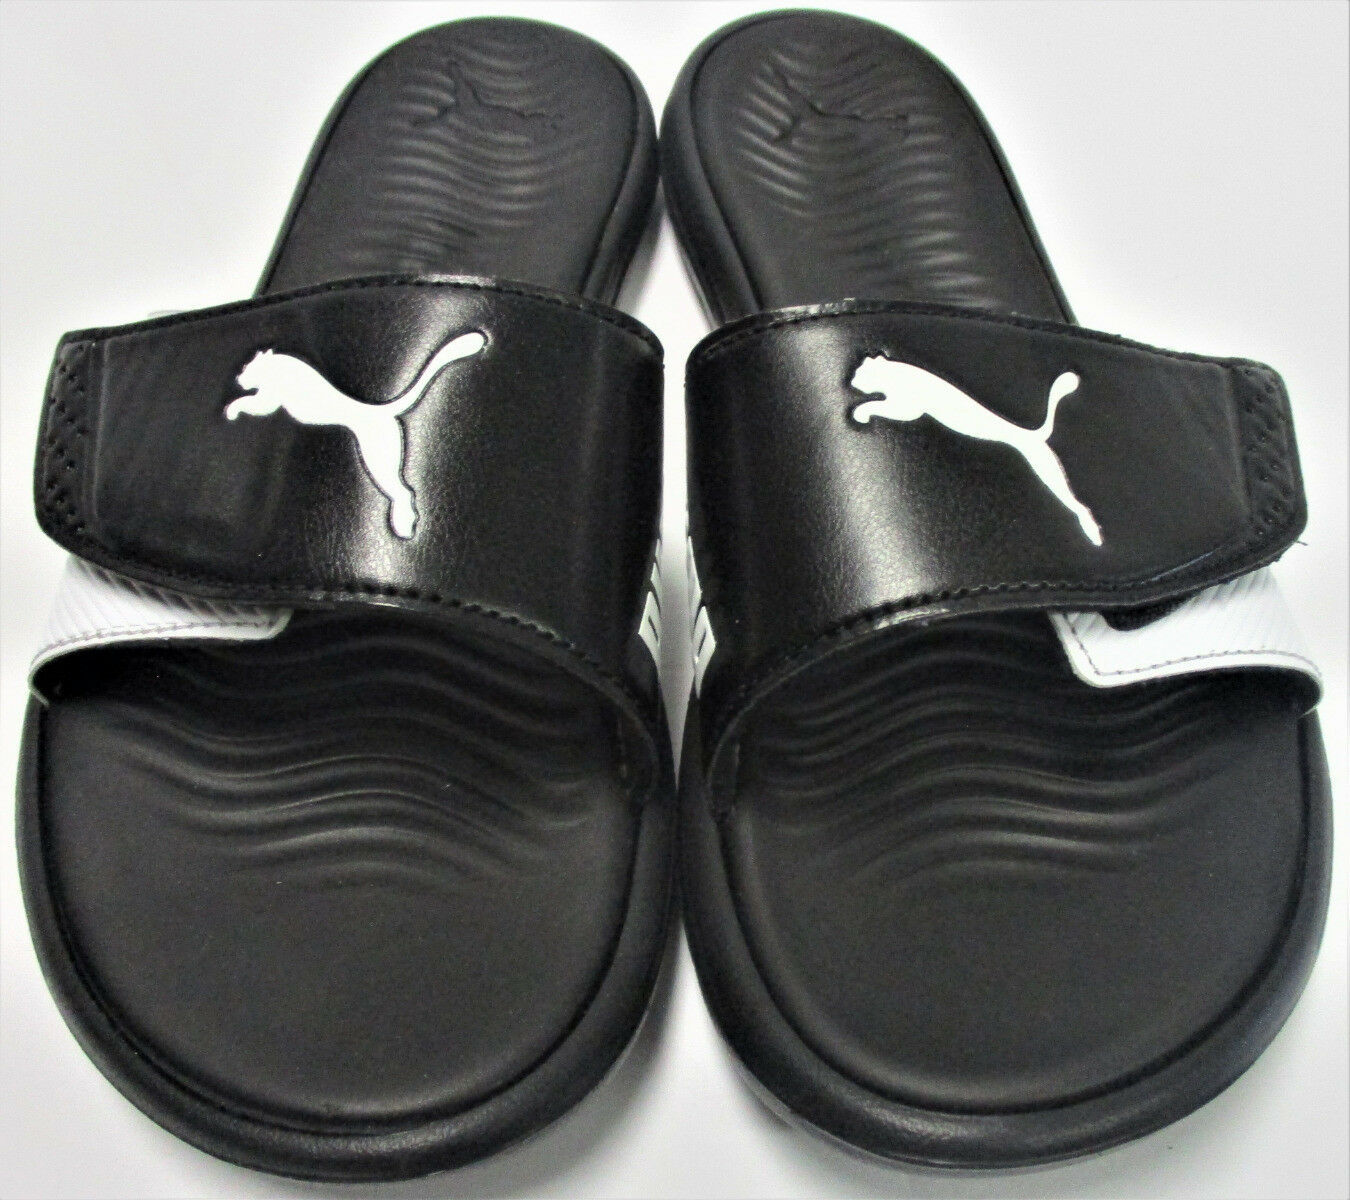 PUMA Womens' Adjustable Strap Surfcat Slide Sandals - Size 7 - Black ...